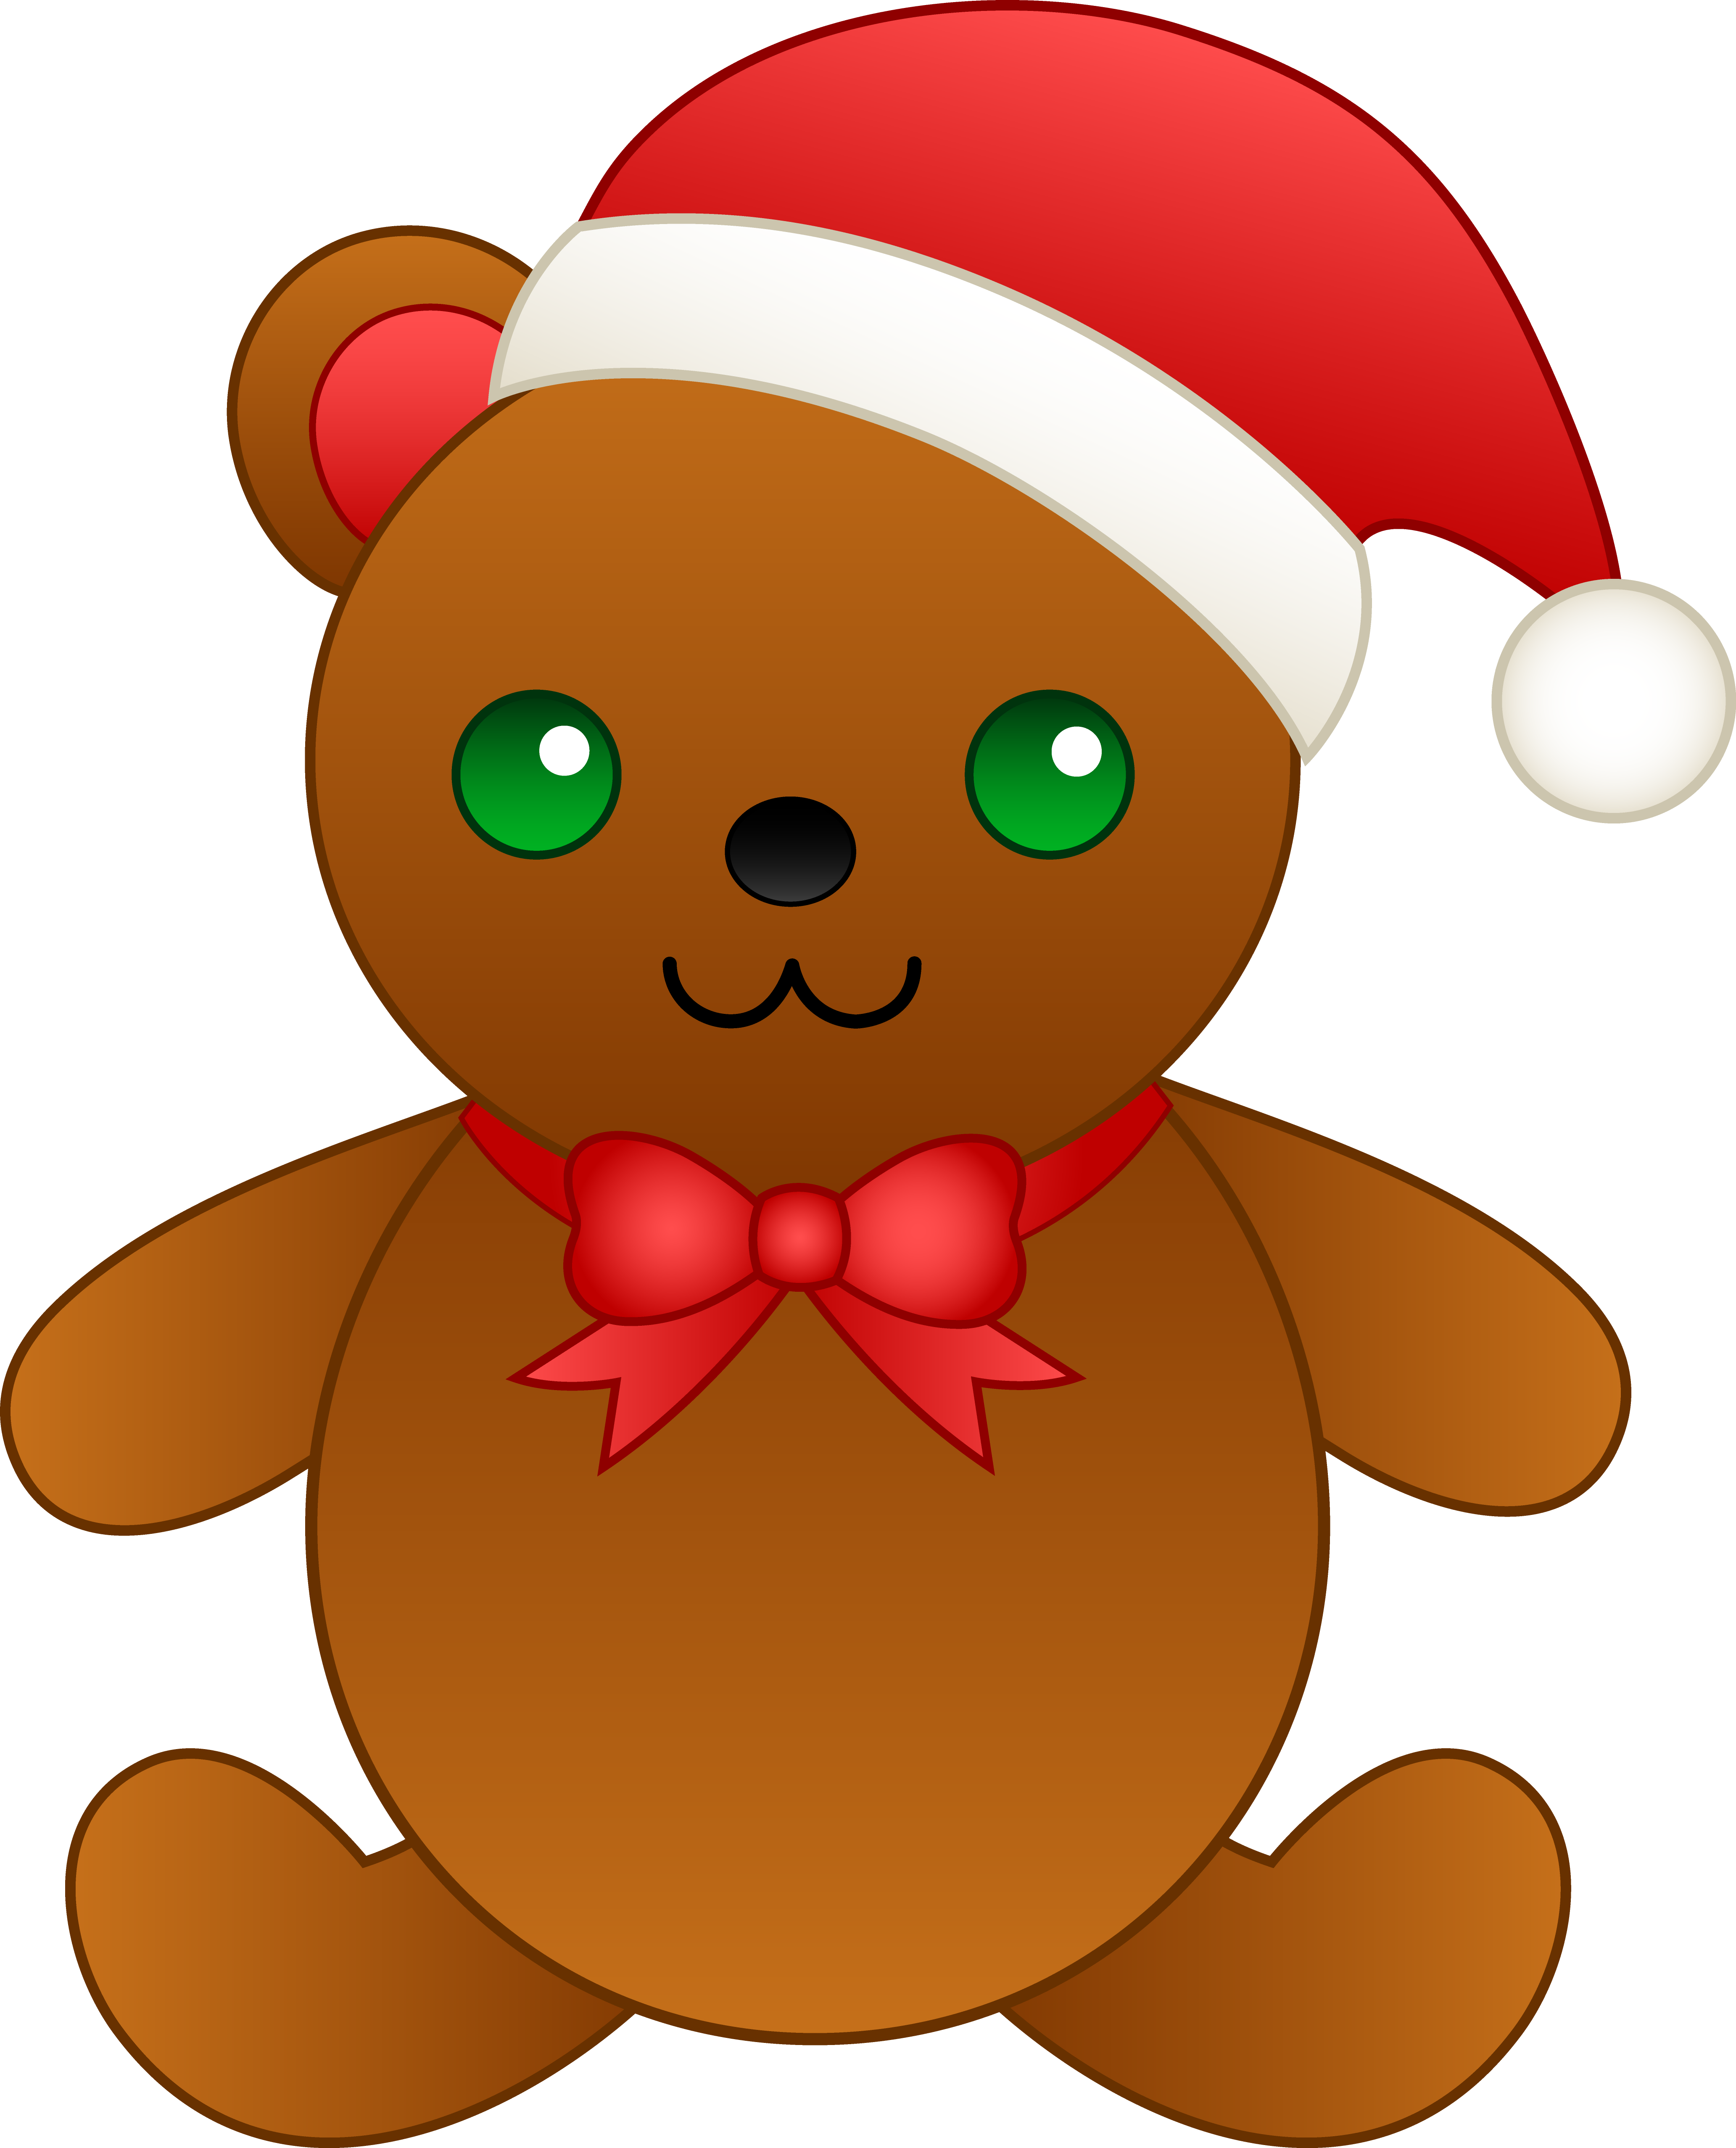 Christmas Bear Clip Art